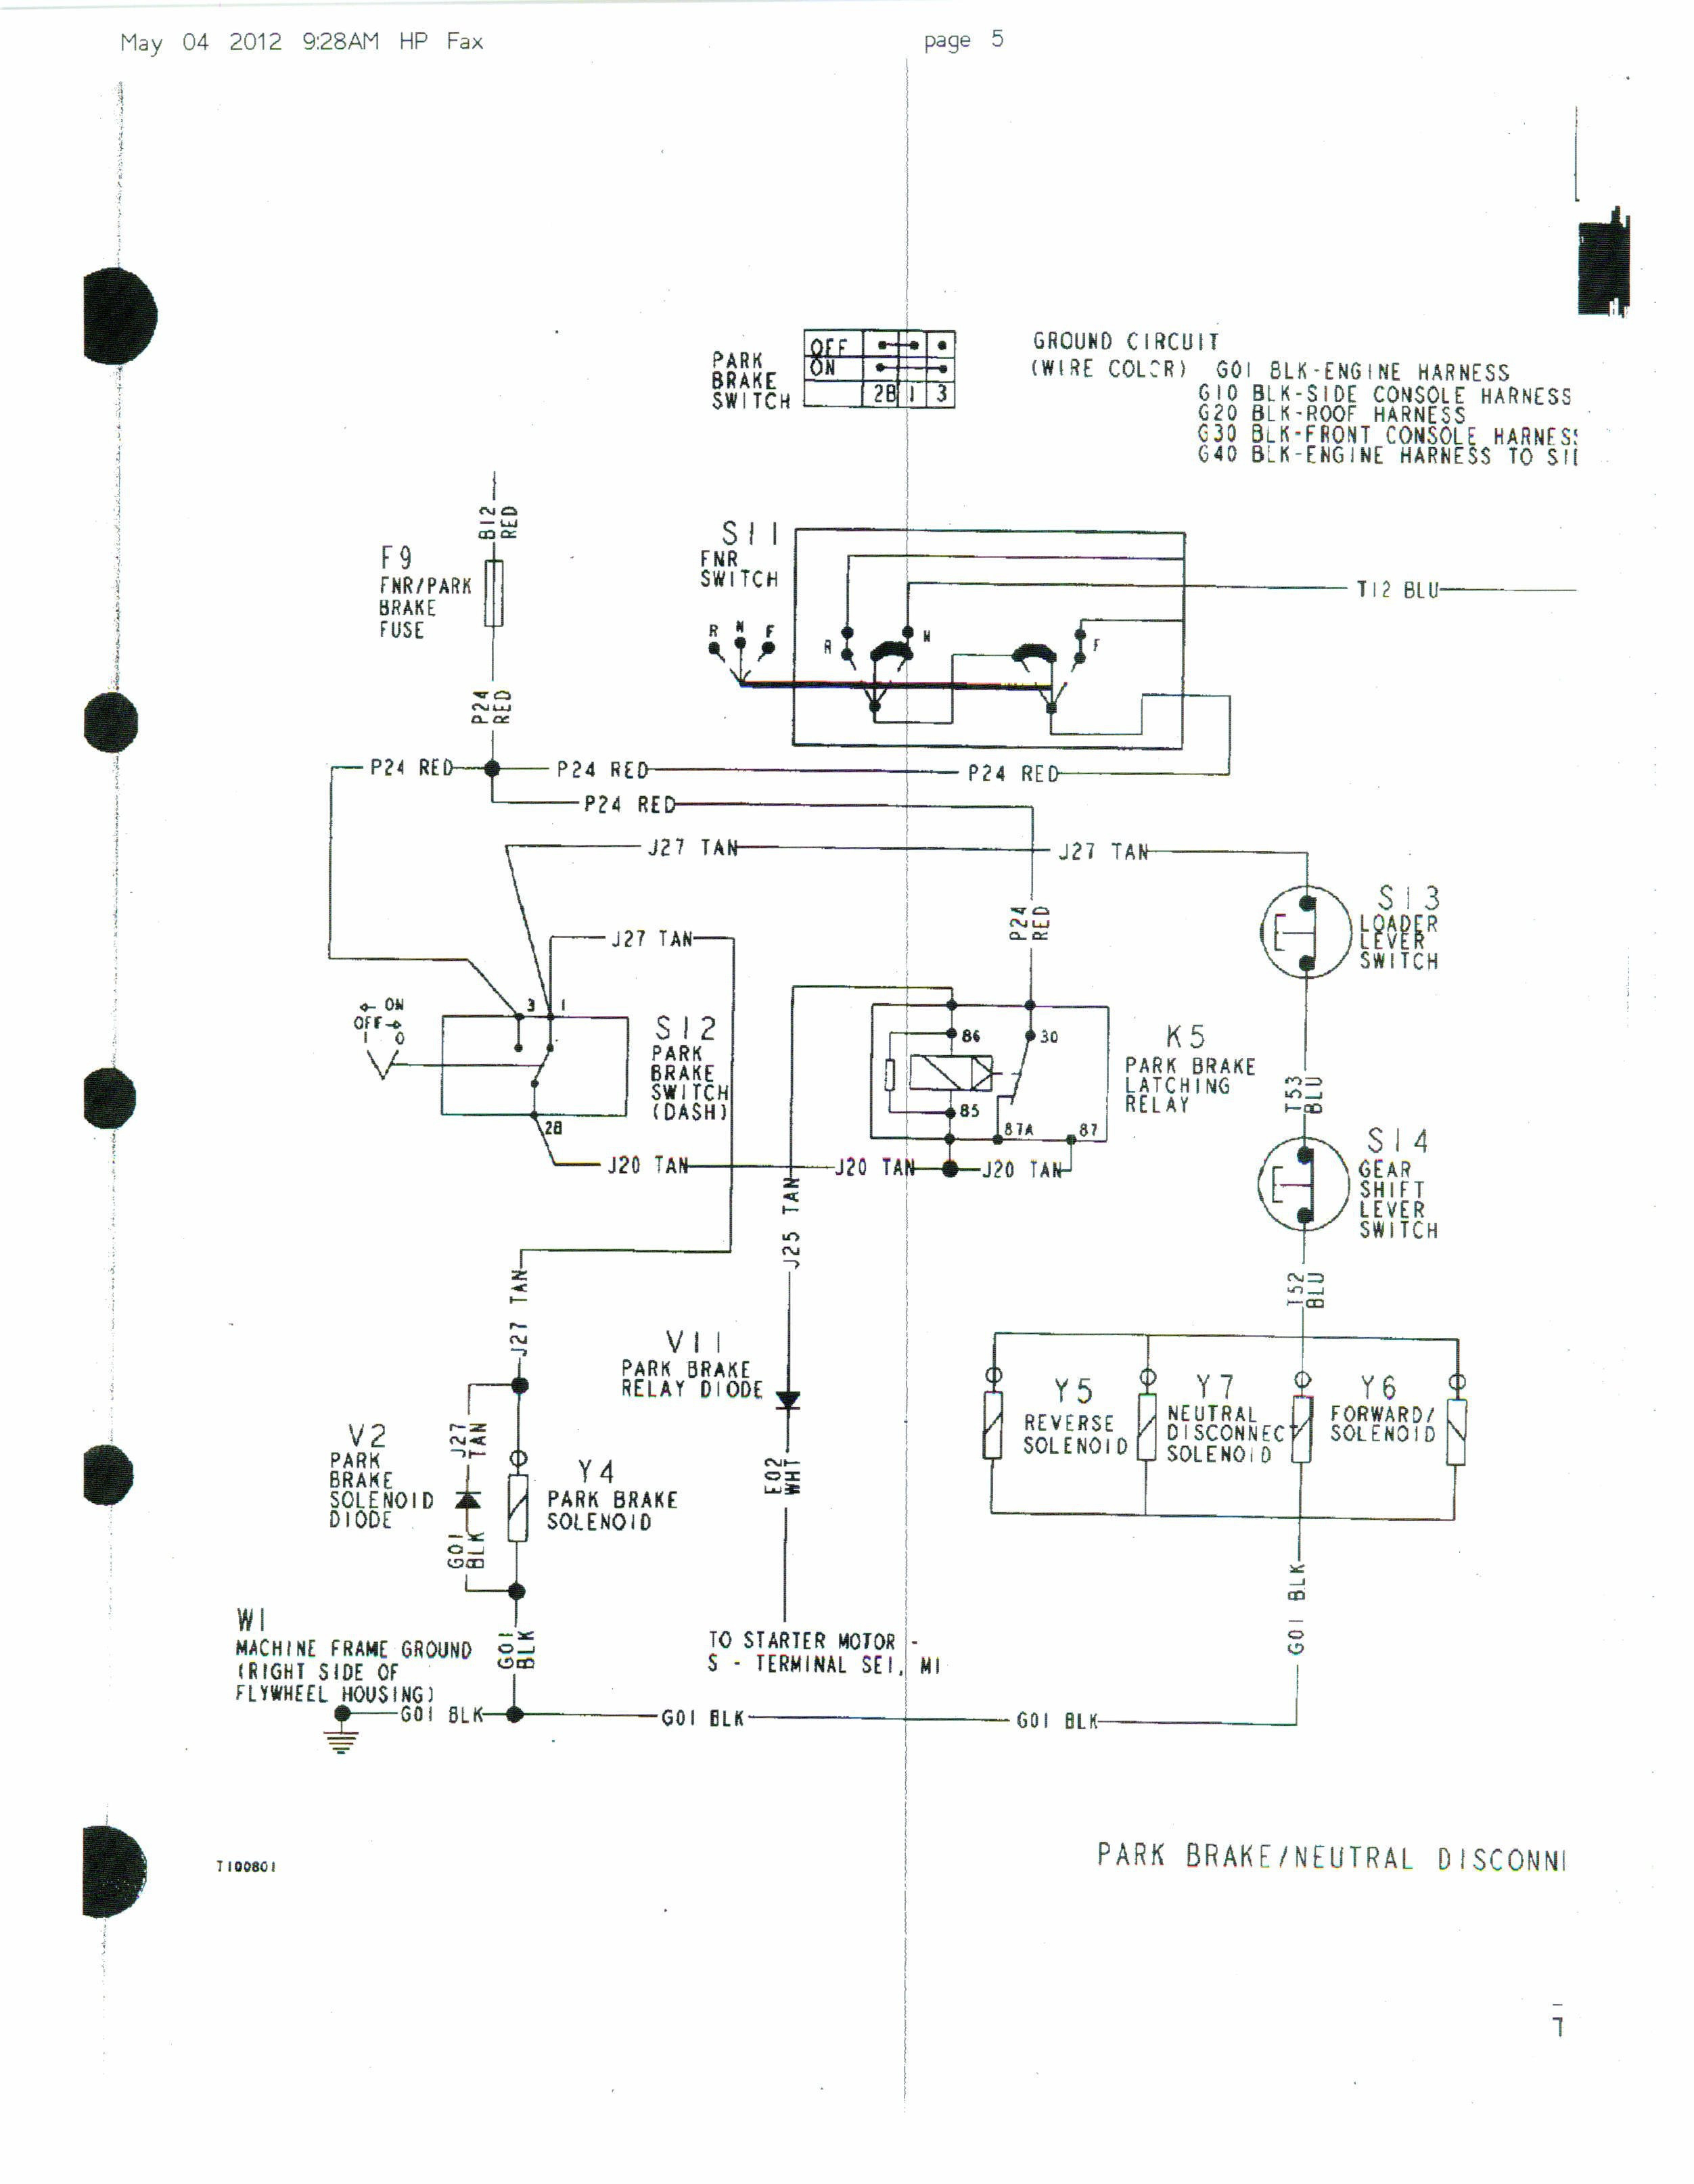 Pioneer Bypass Wiring Schematic | Wiring Diagram - Pioneer Parking Brake Bypass Wiring Diagram